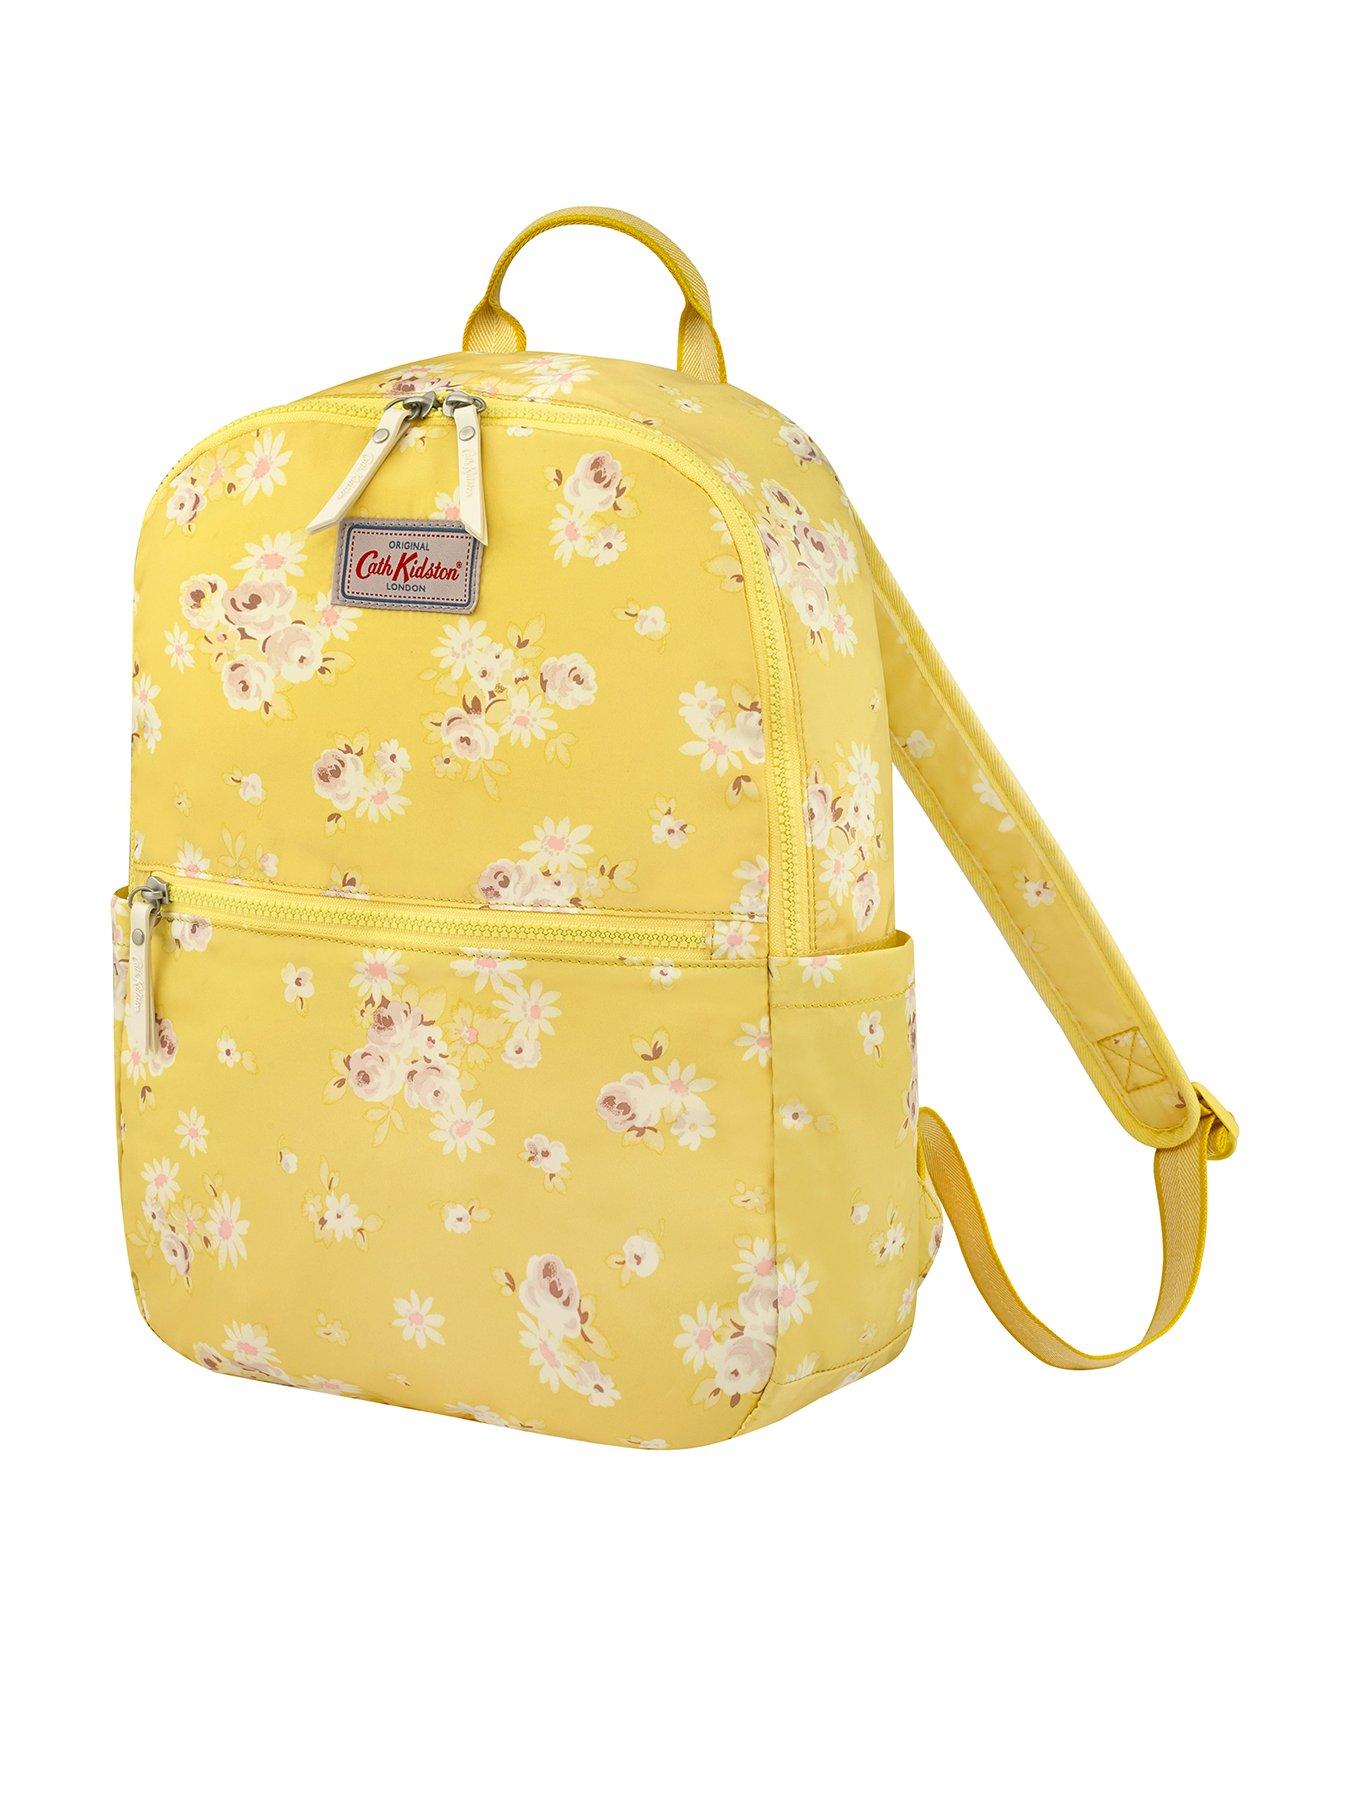 yellow cath kidston bag